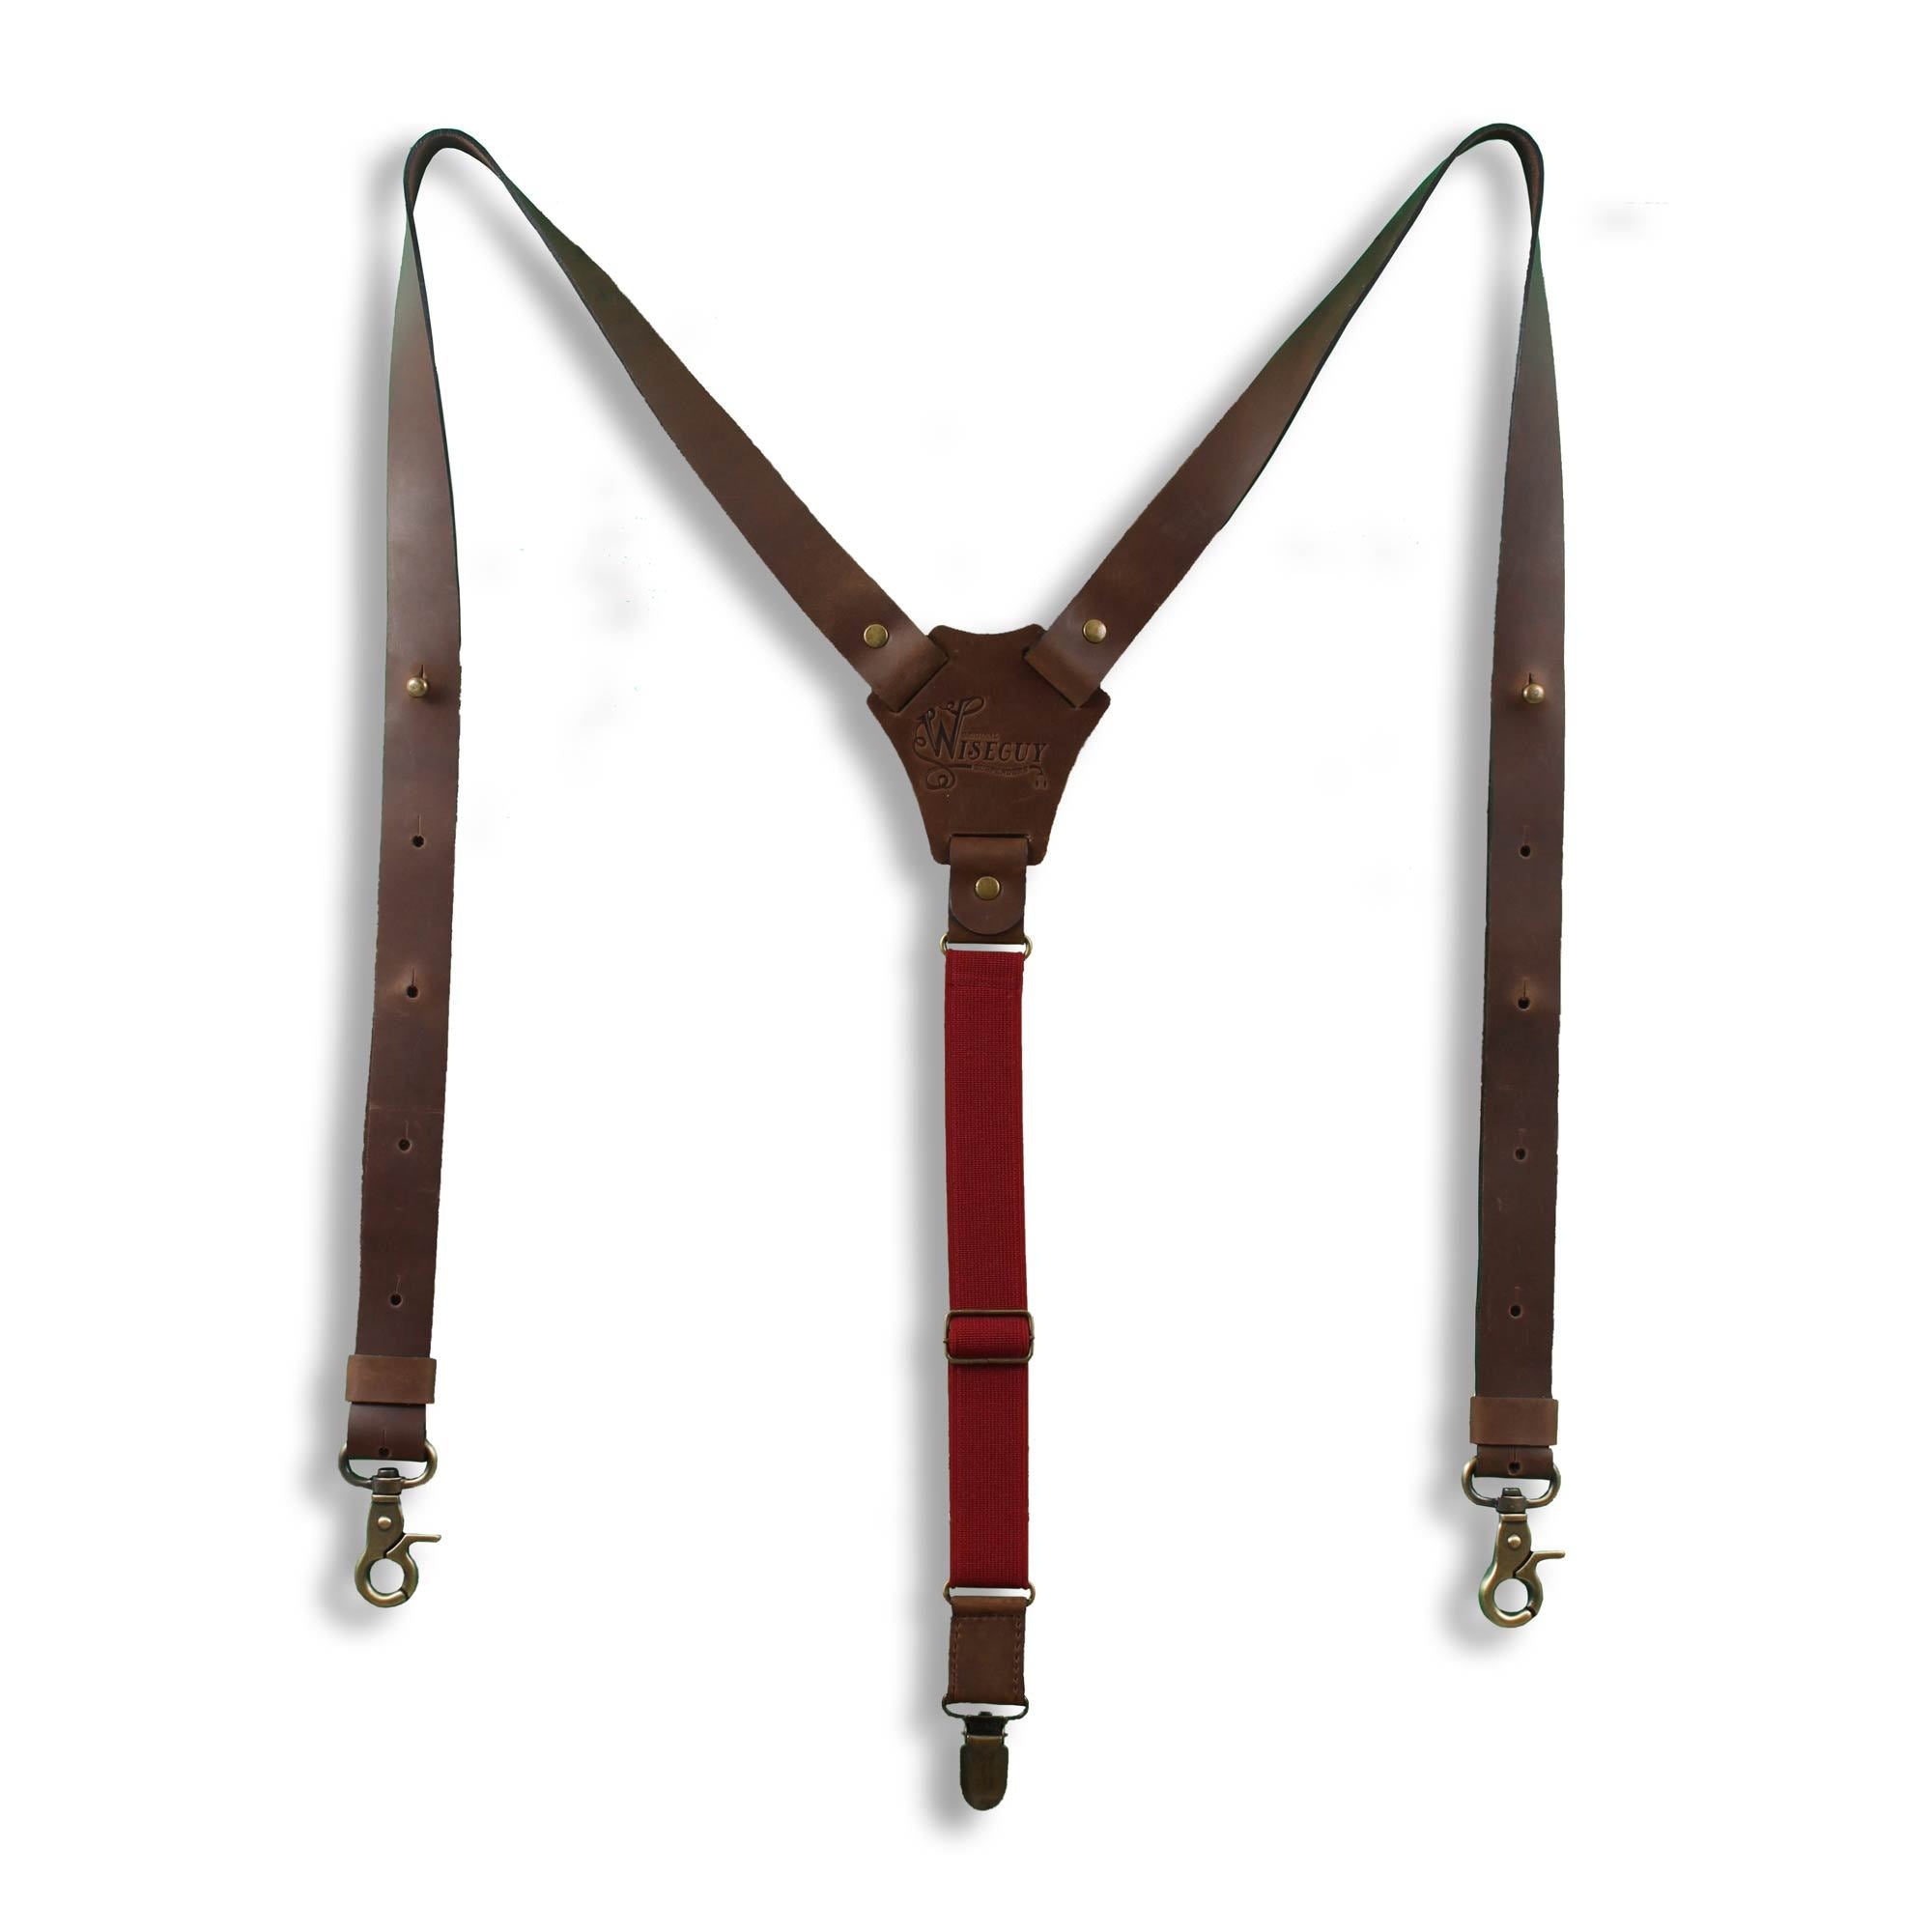 Flex Dark Brown leather Suspenders with Burgundy Elastic Back Strap - Wiseguy Suspenders